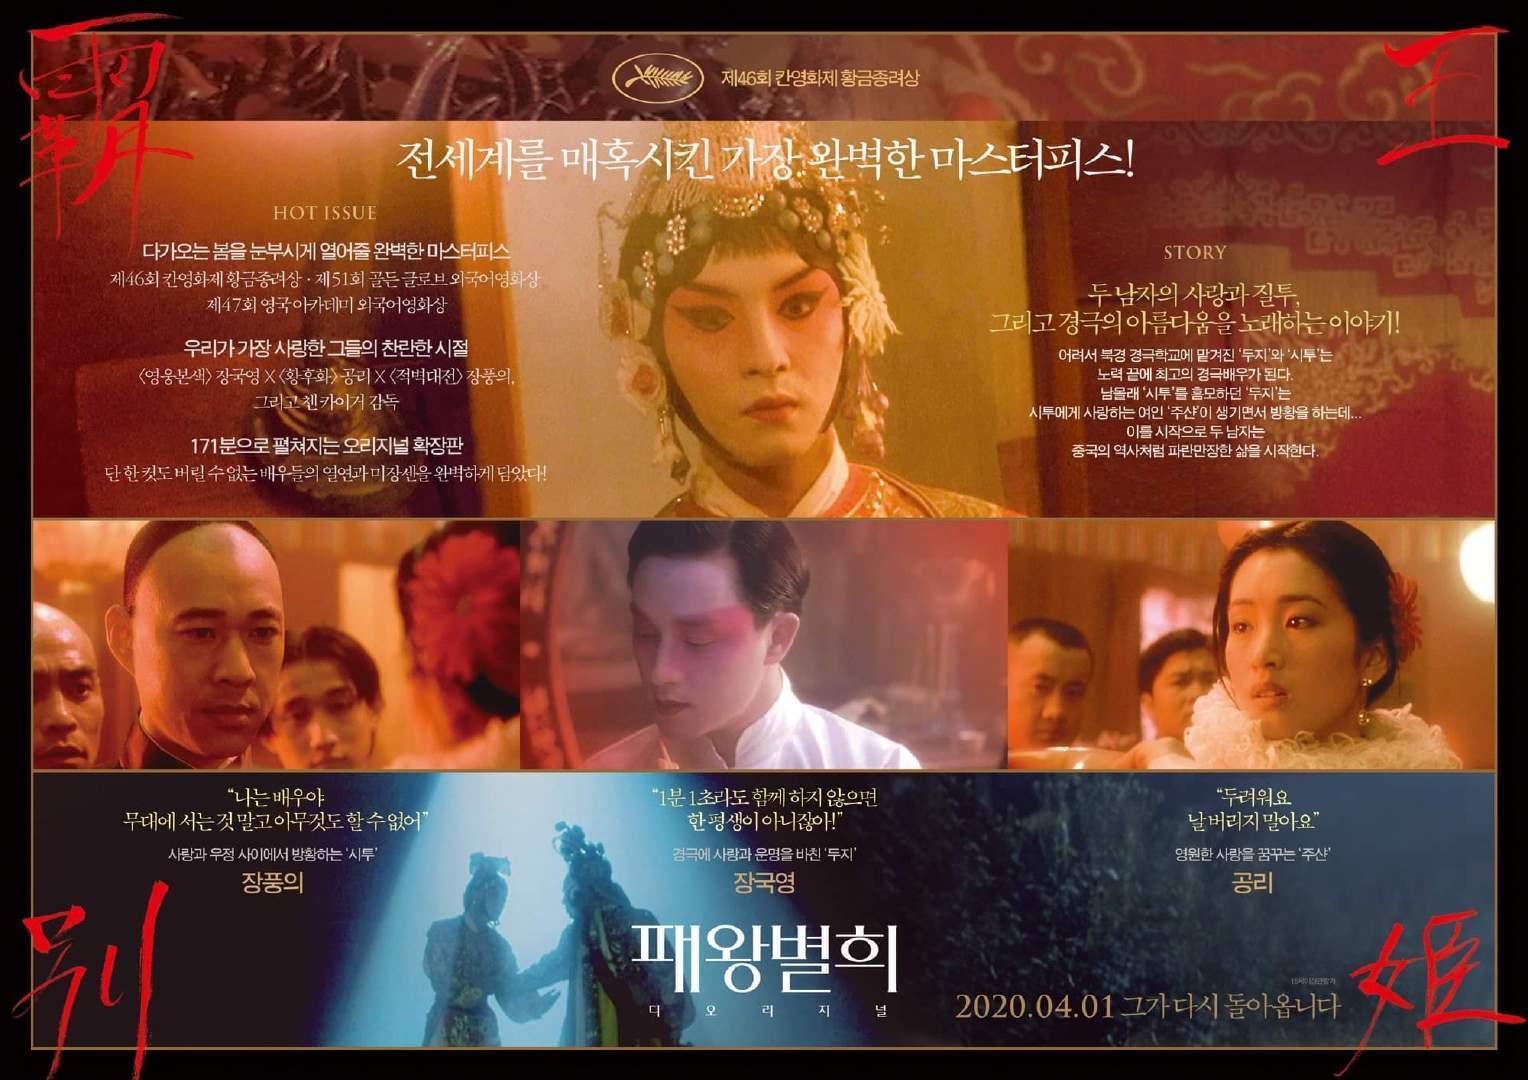 《霸王别姬》韩国重映因疫情延期 原定4月1日愚人节上映